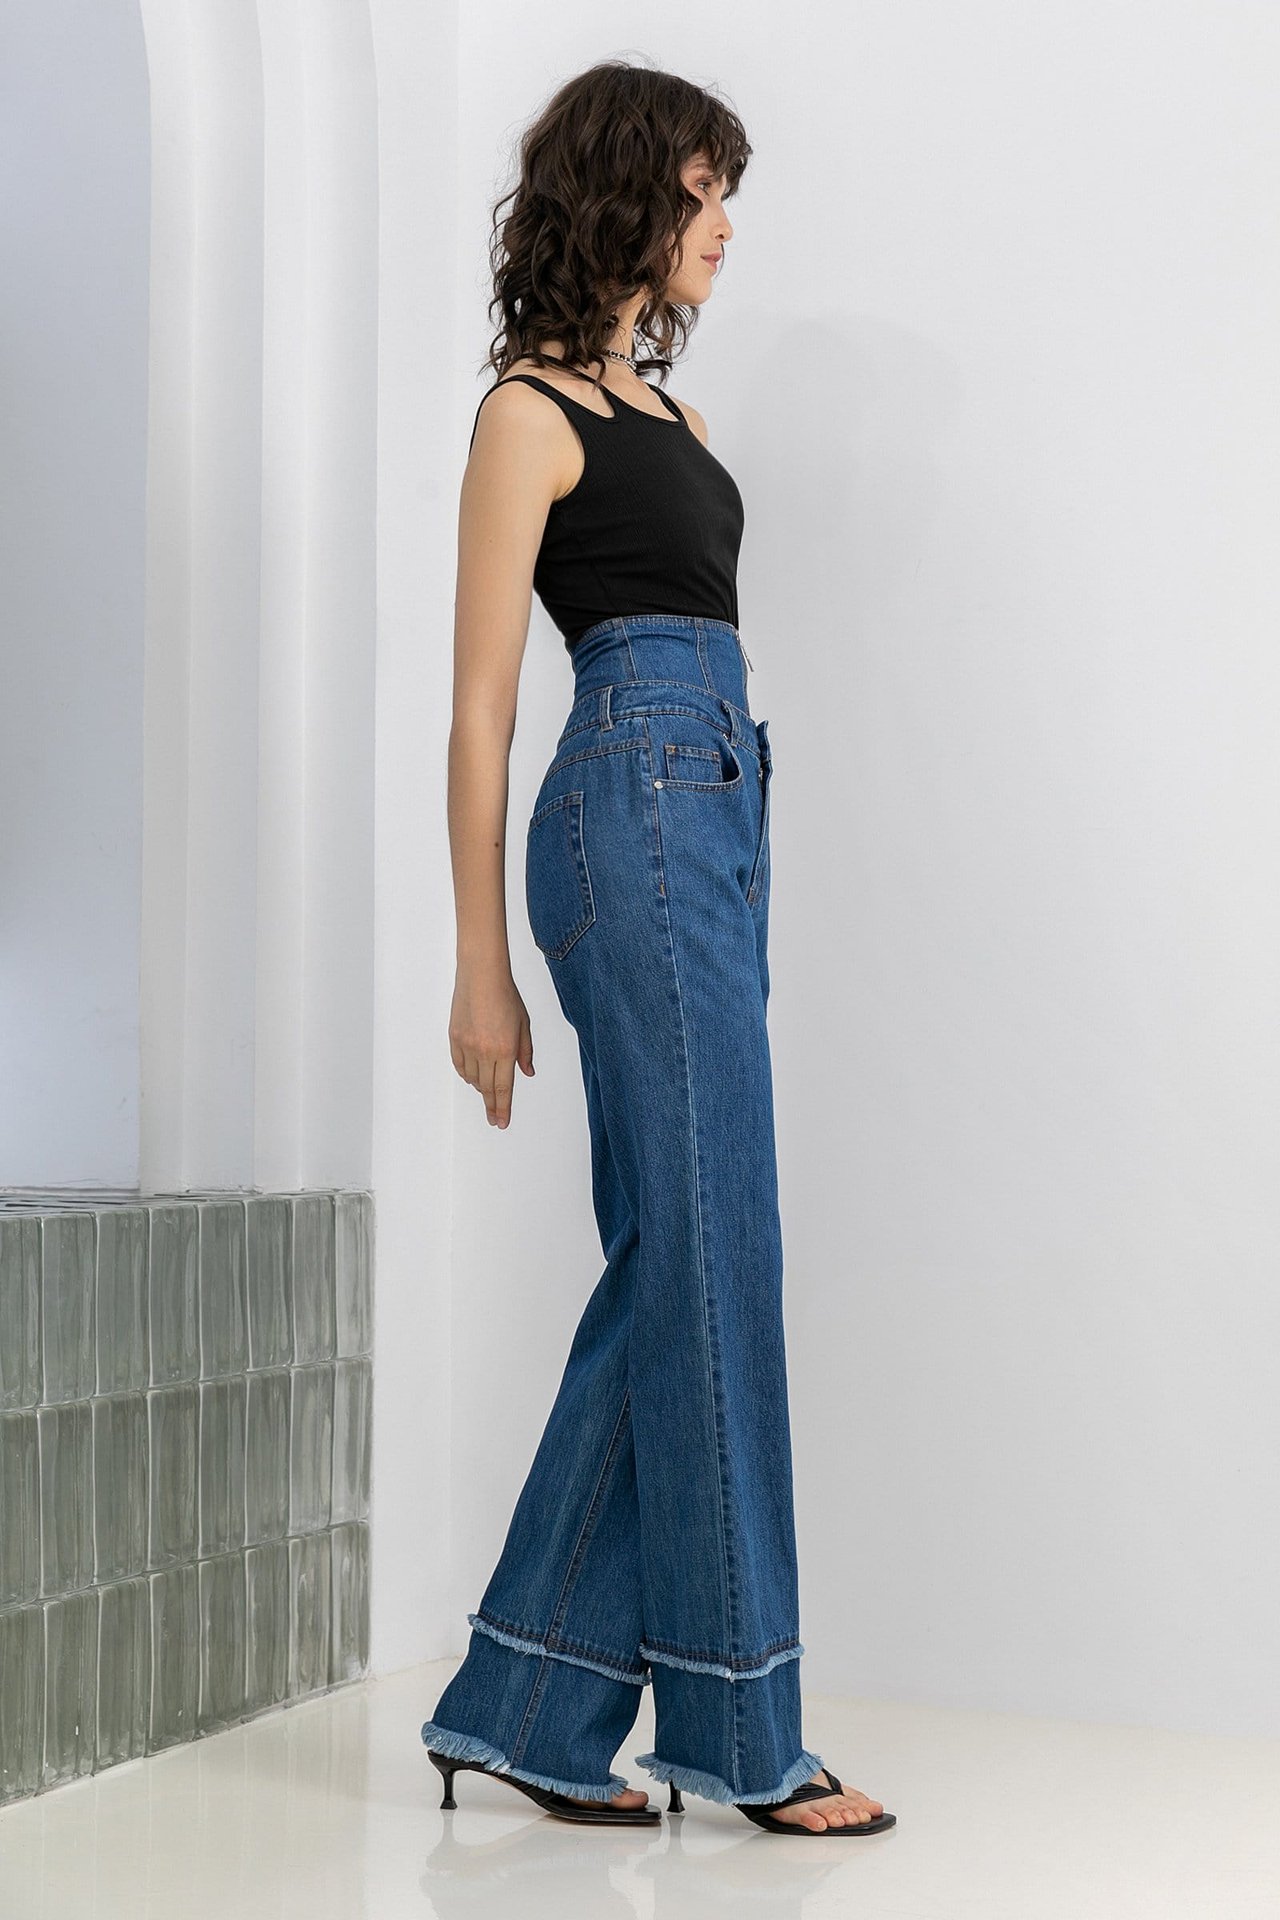 Consejos de Moda para Chicas Bajitas Como Lucir Genial Con Jeans